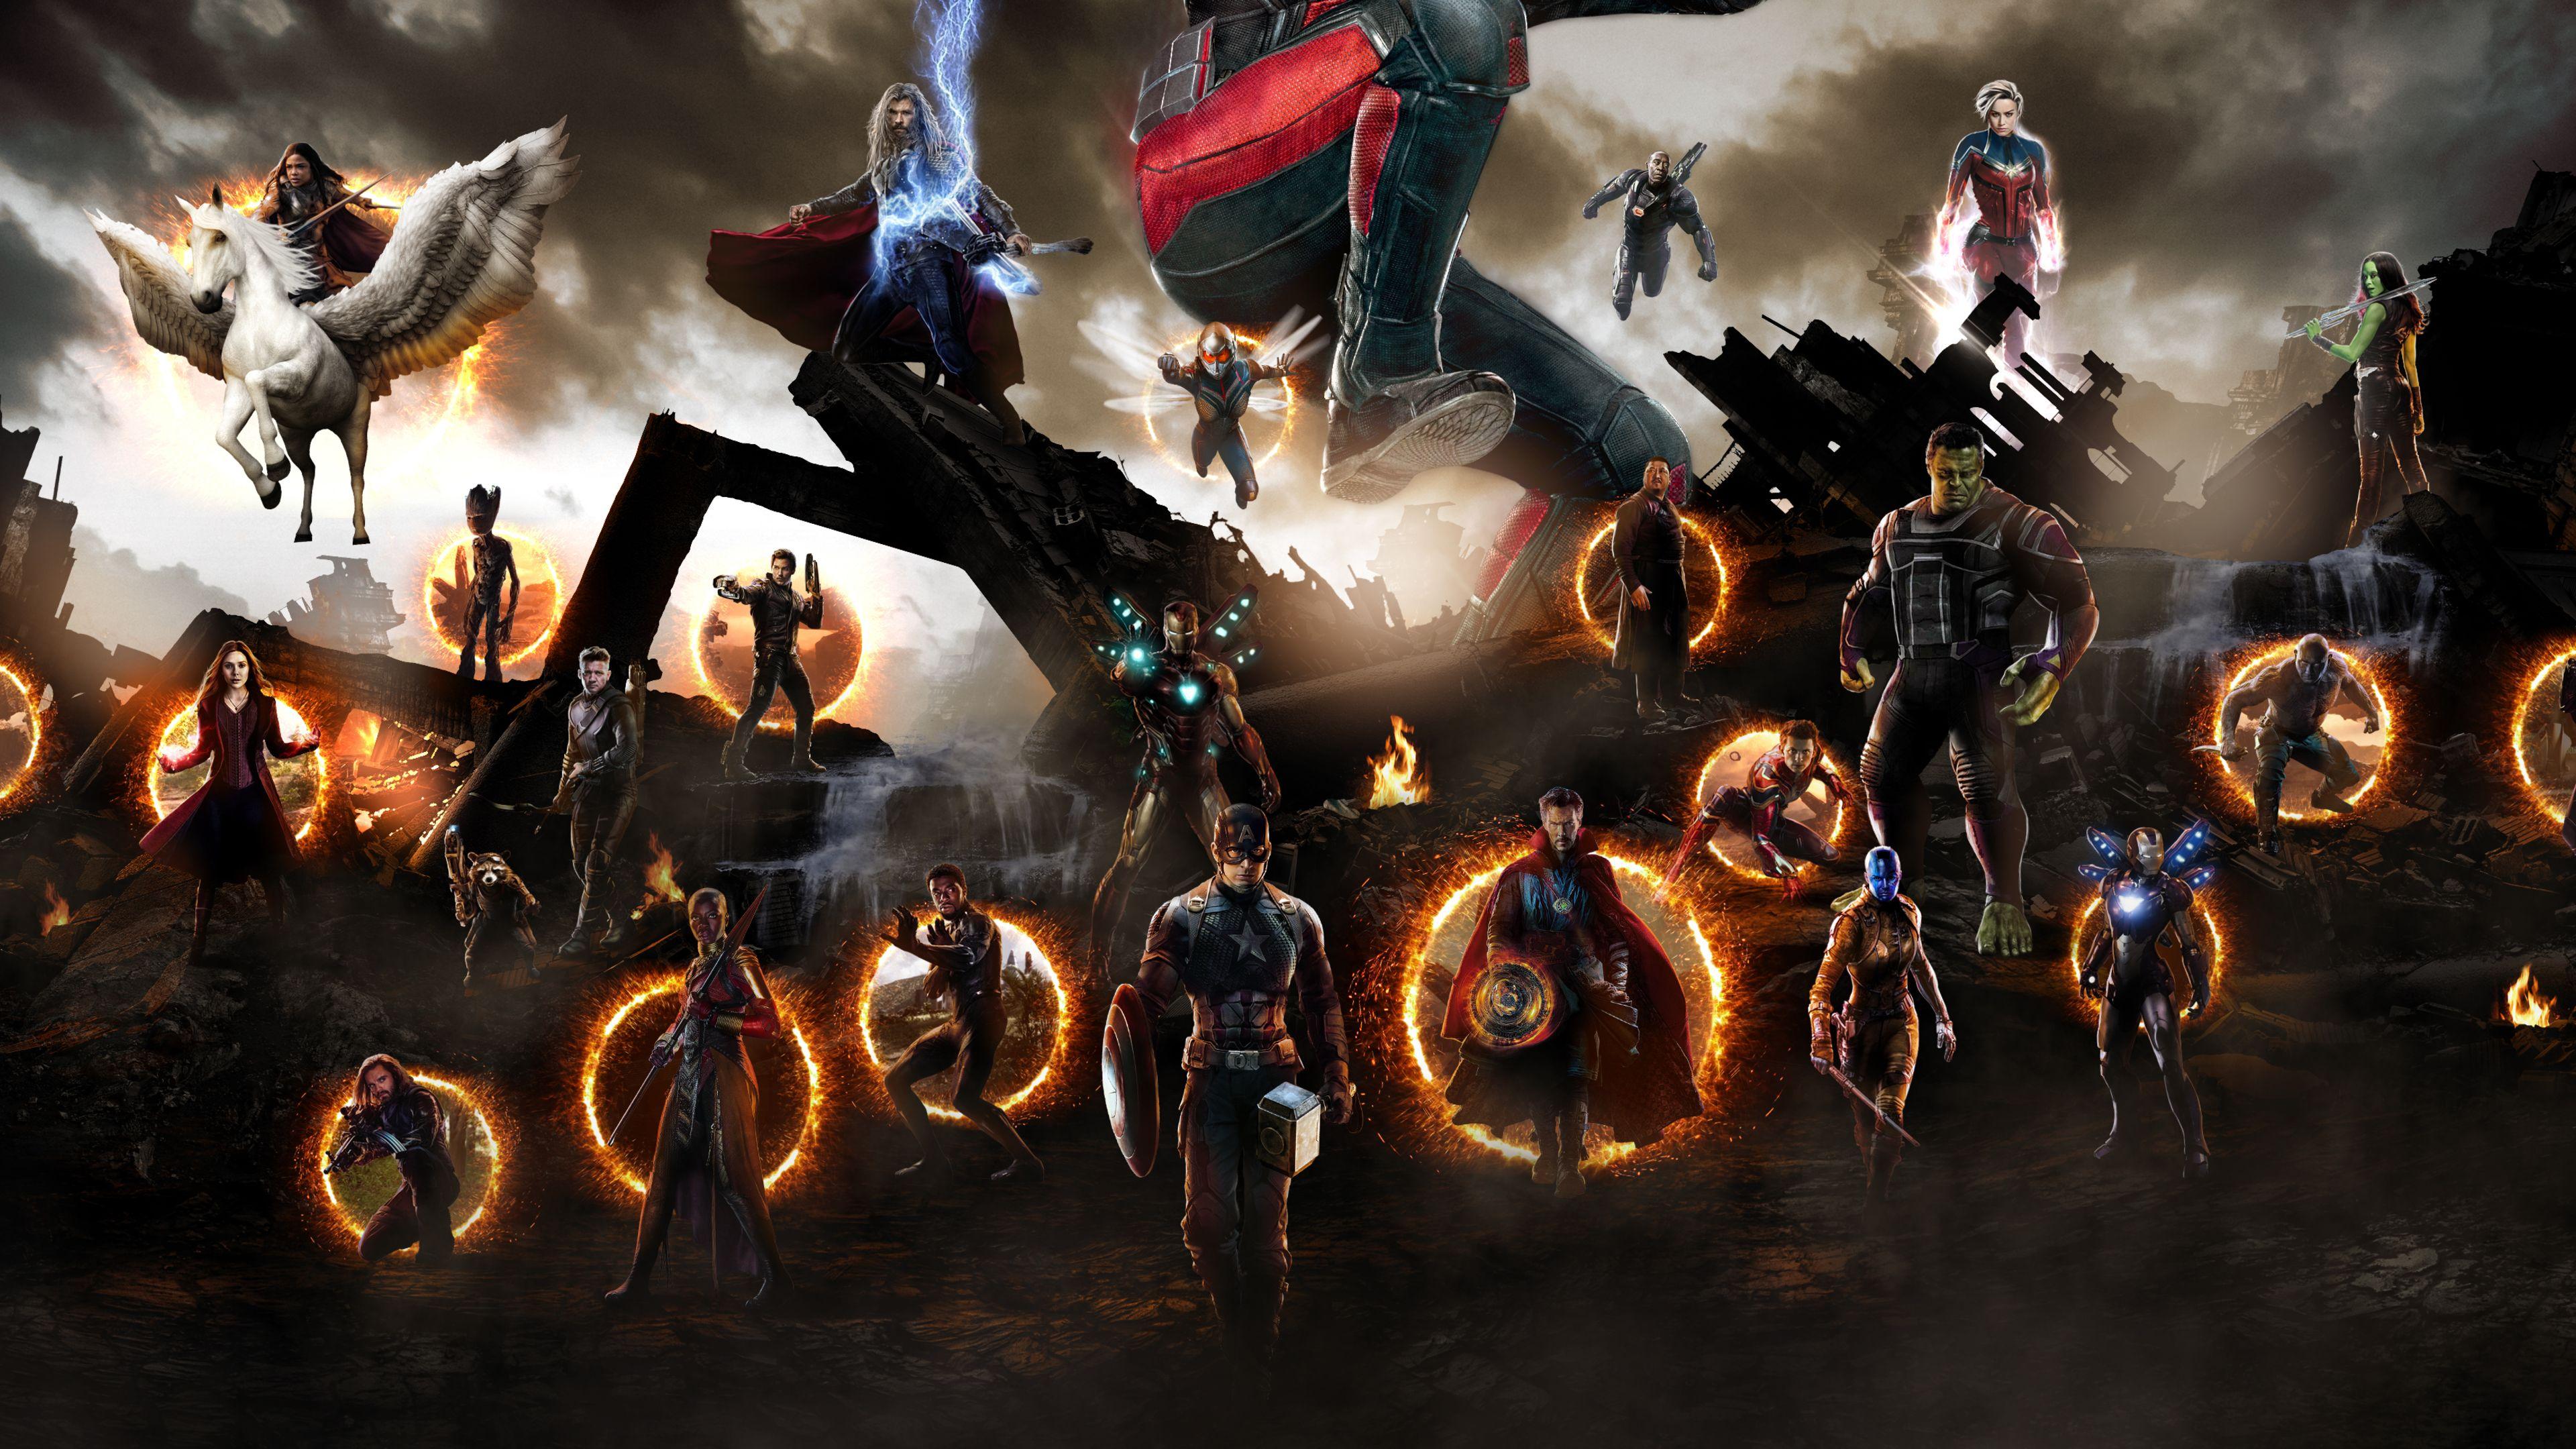 avengers endgame wallpaper